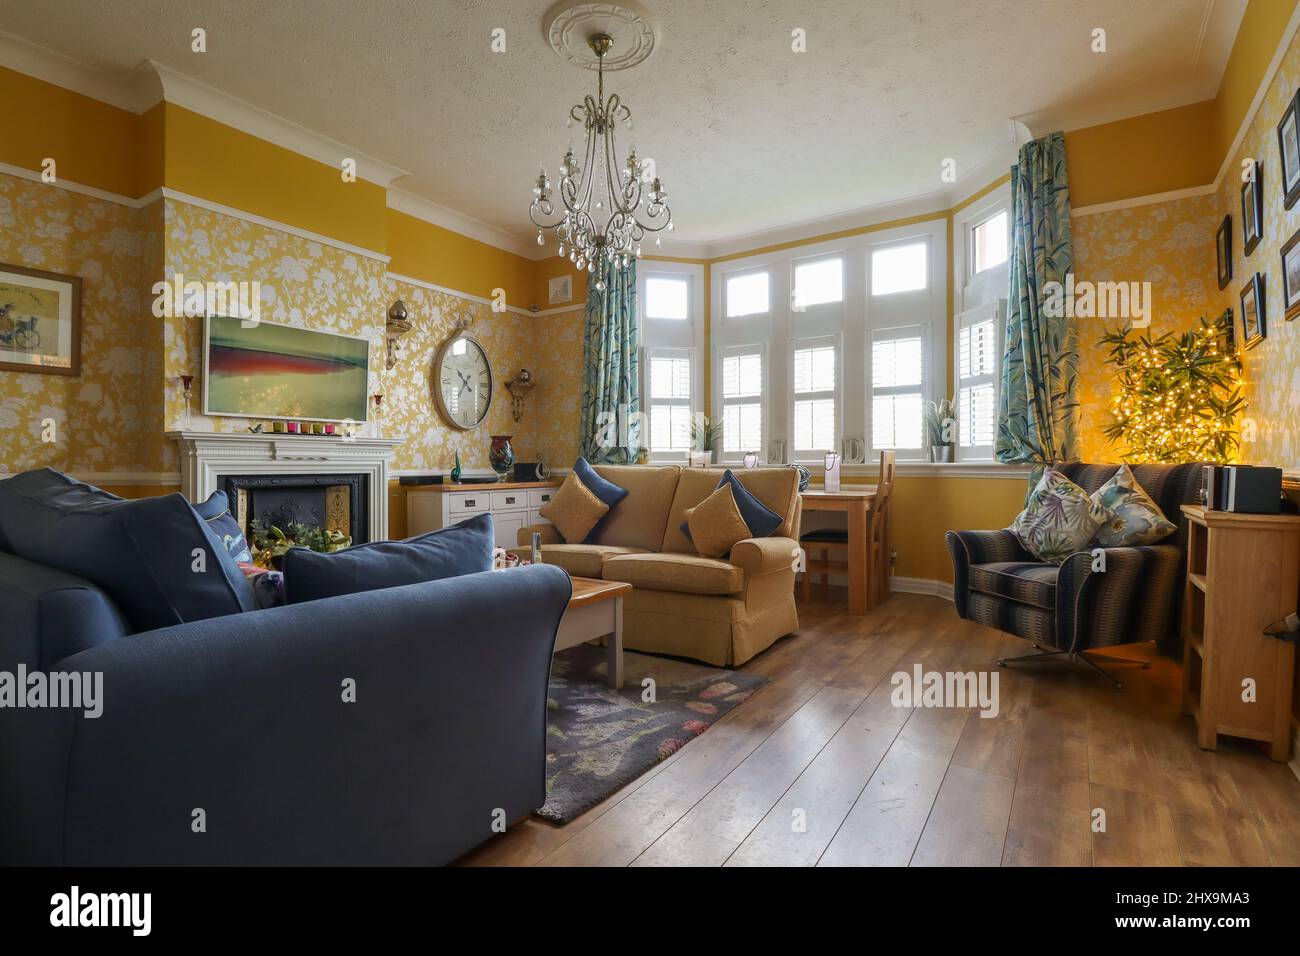 Ein klassisch eingerichtetes marineblaues und gelb-ockerfarbenes Wohnzimmer/Lounge Stockfoto